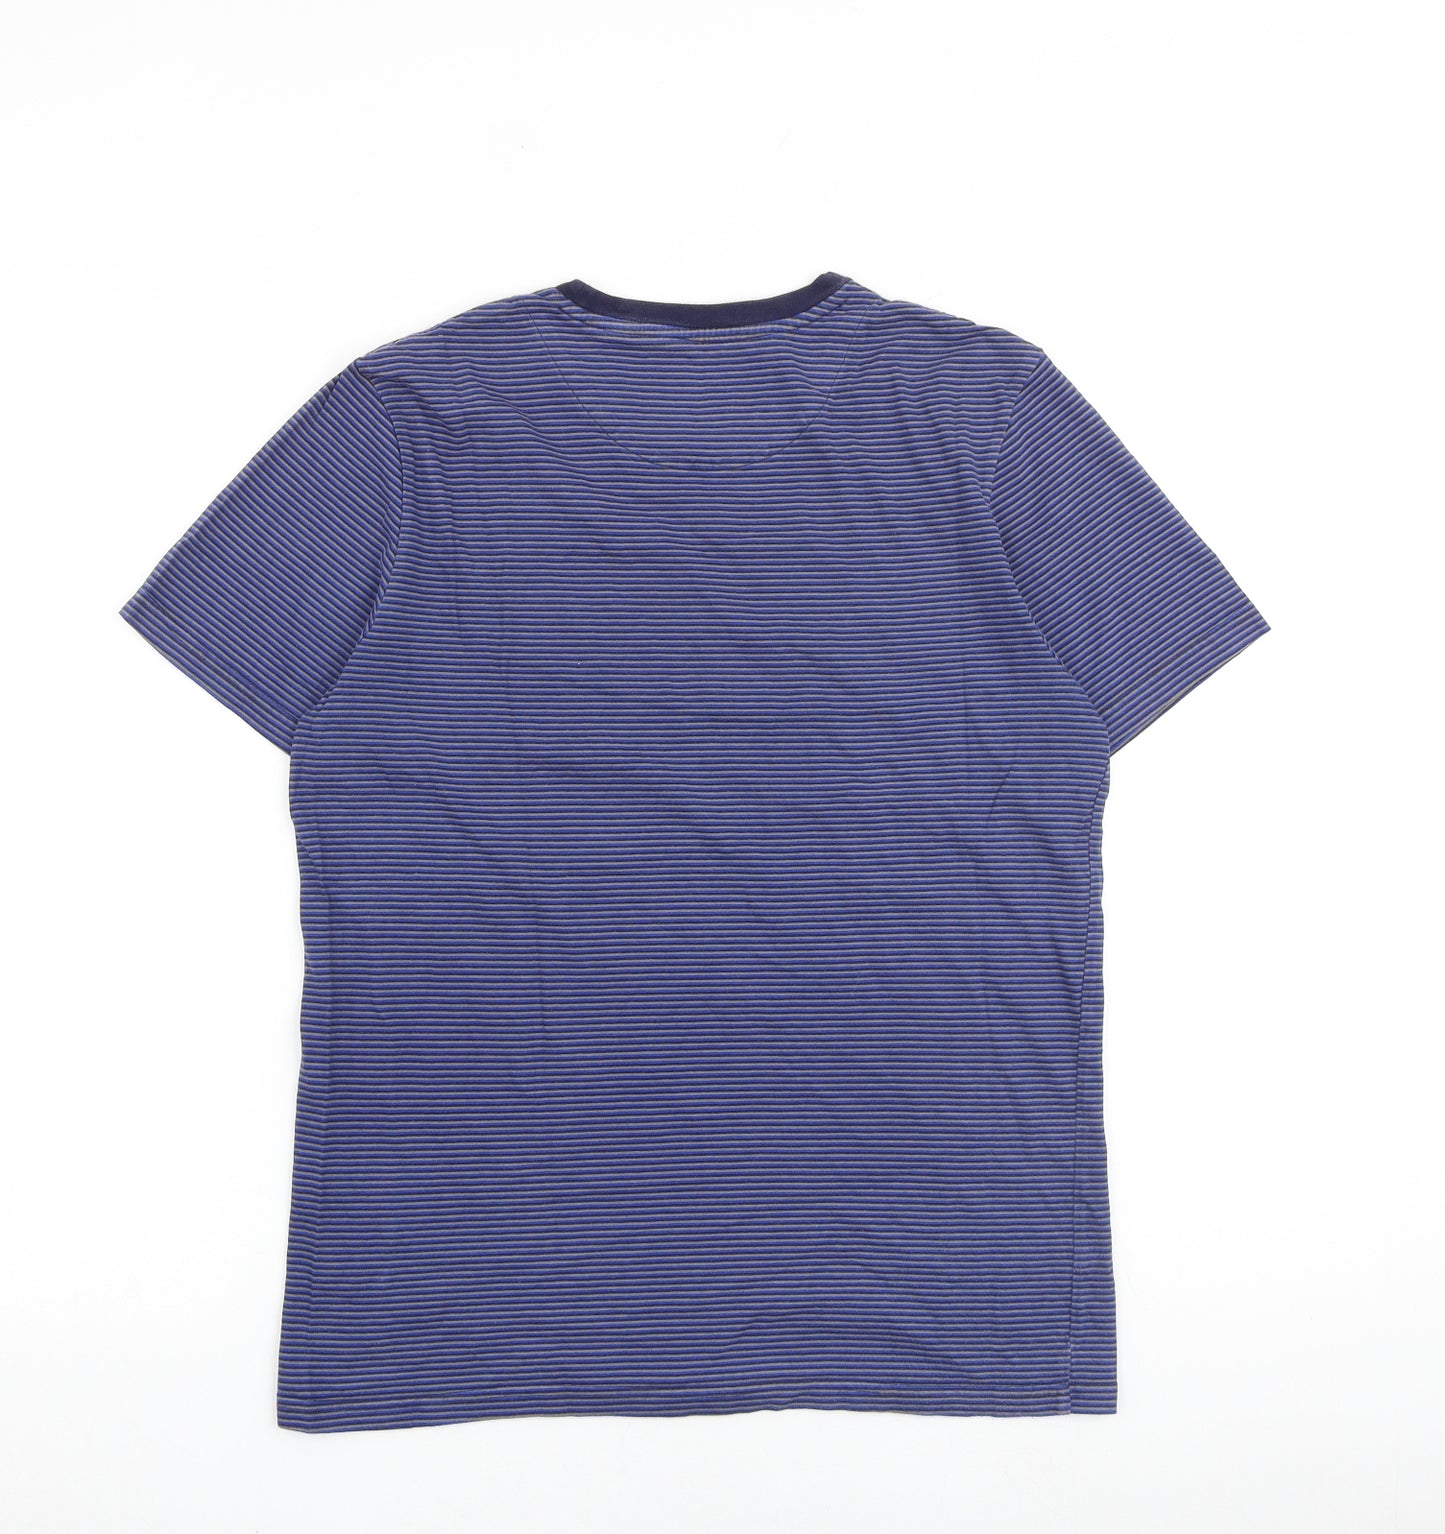 Lyle & Scott Mens Blue Striped Cotton T-Shirt Size M Round Neck